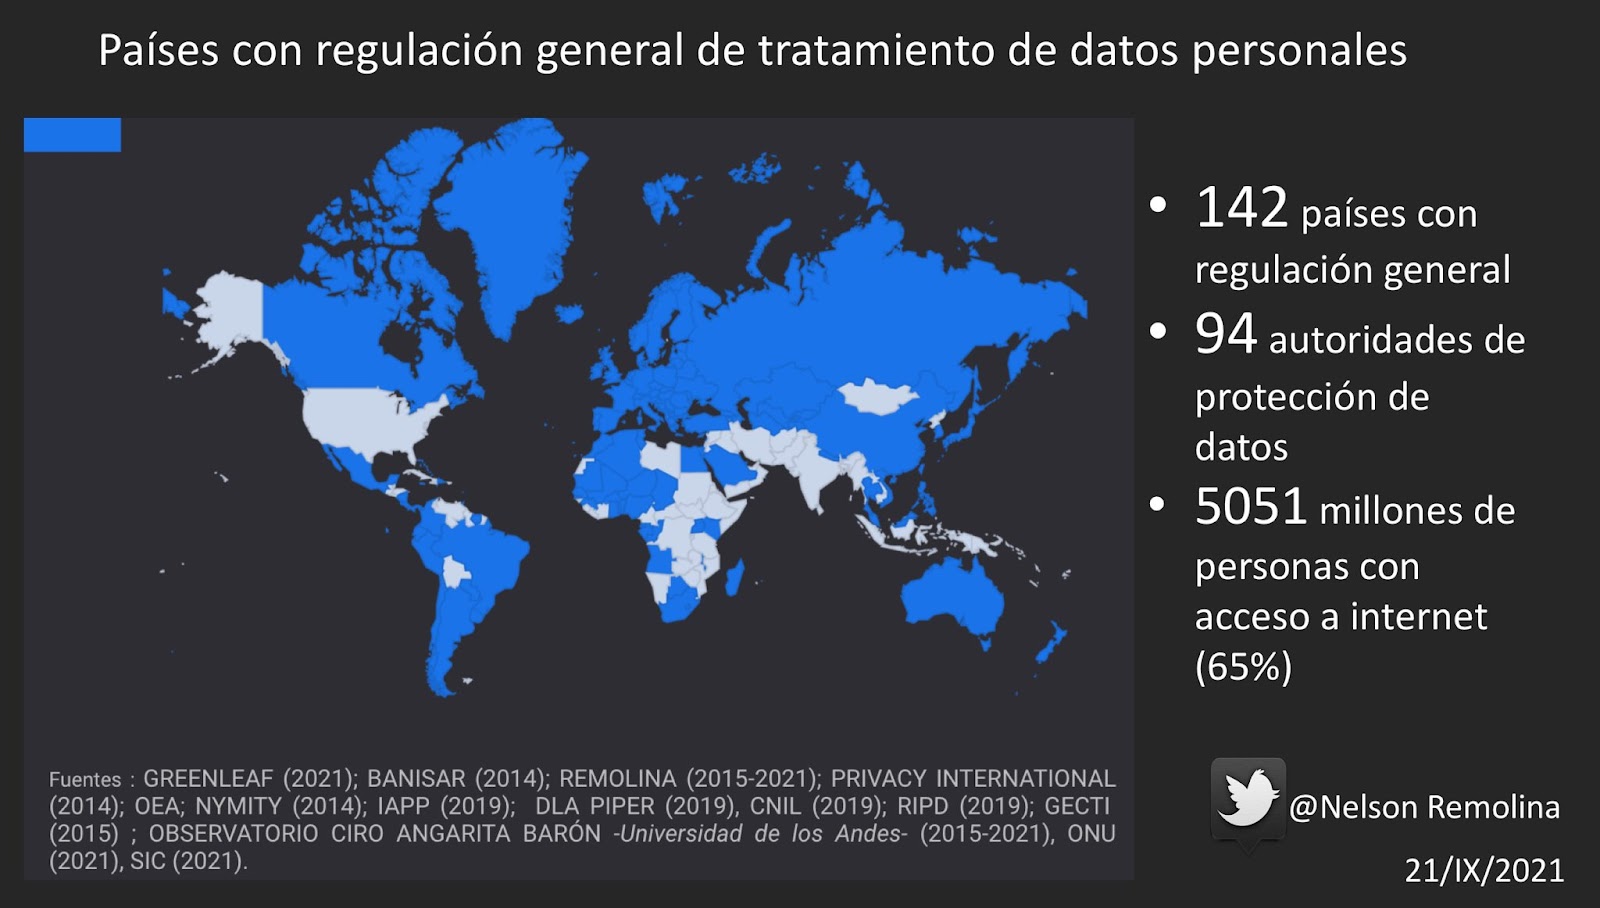 142 países con regulación general de protección de datos personales. 94 autoridades de protección de datos. 5051 millones de personas con acceso a internet (65%). @NelsonRemolina